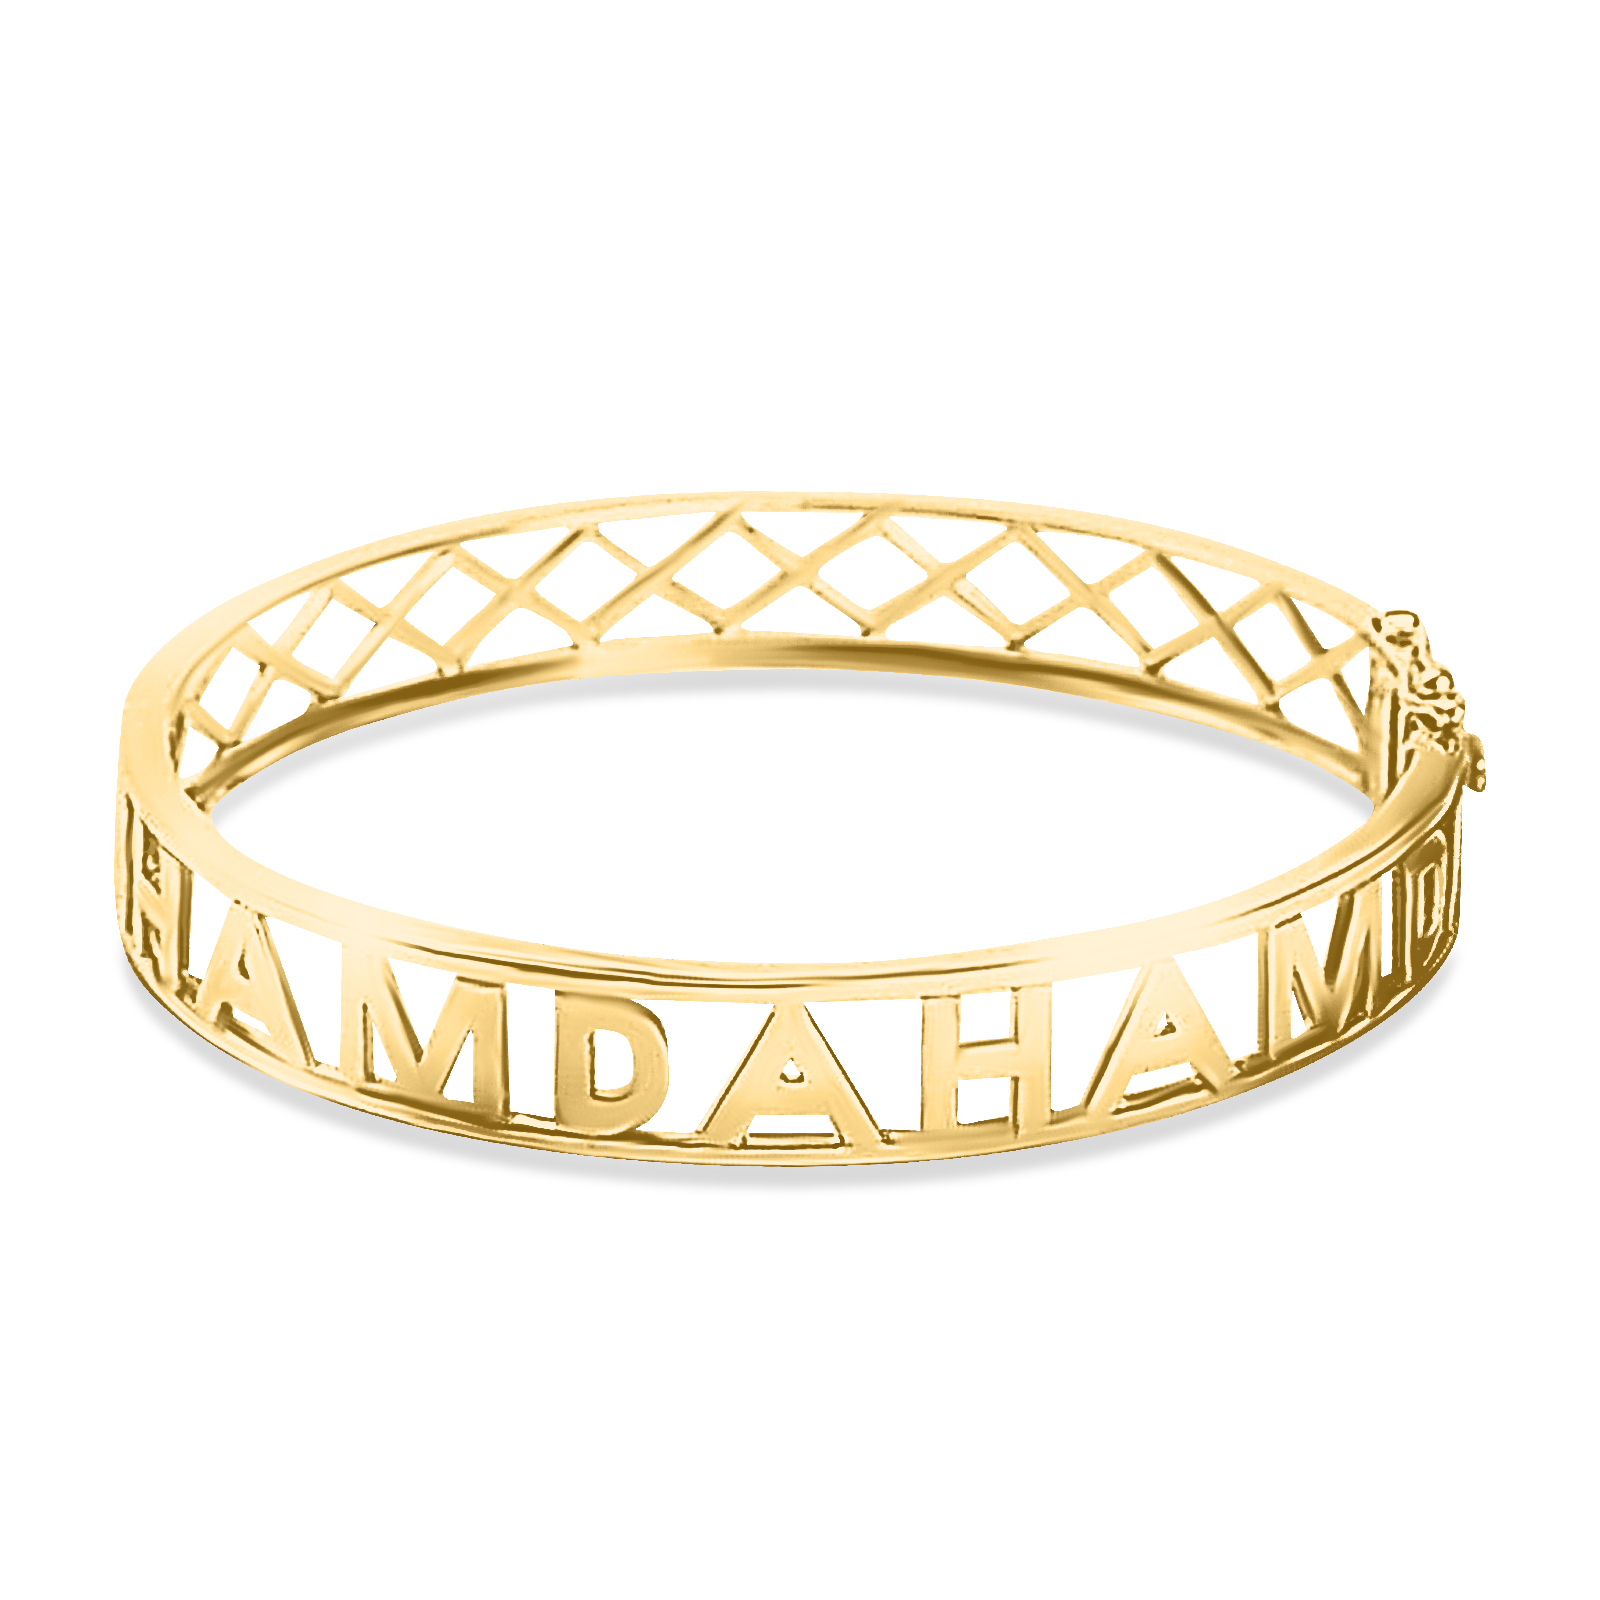 14K Gold Hawaiian Heirloom Jewelry Bracelet [12mm width] Black Enamel